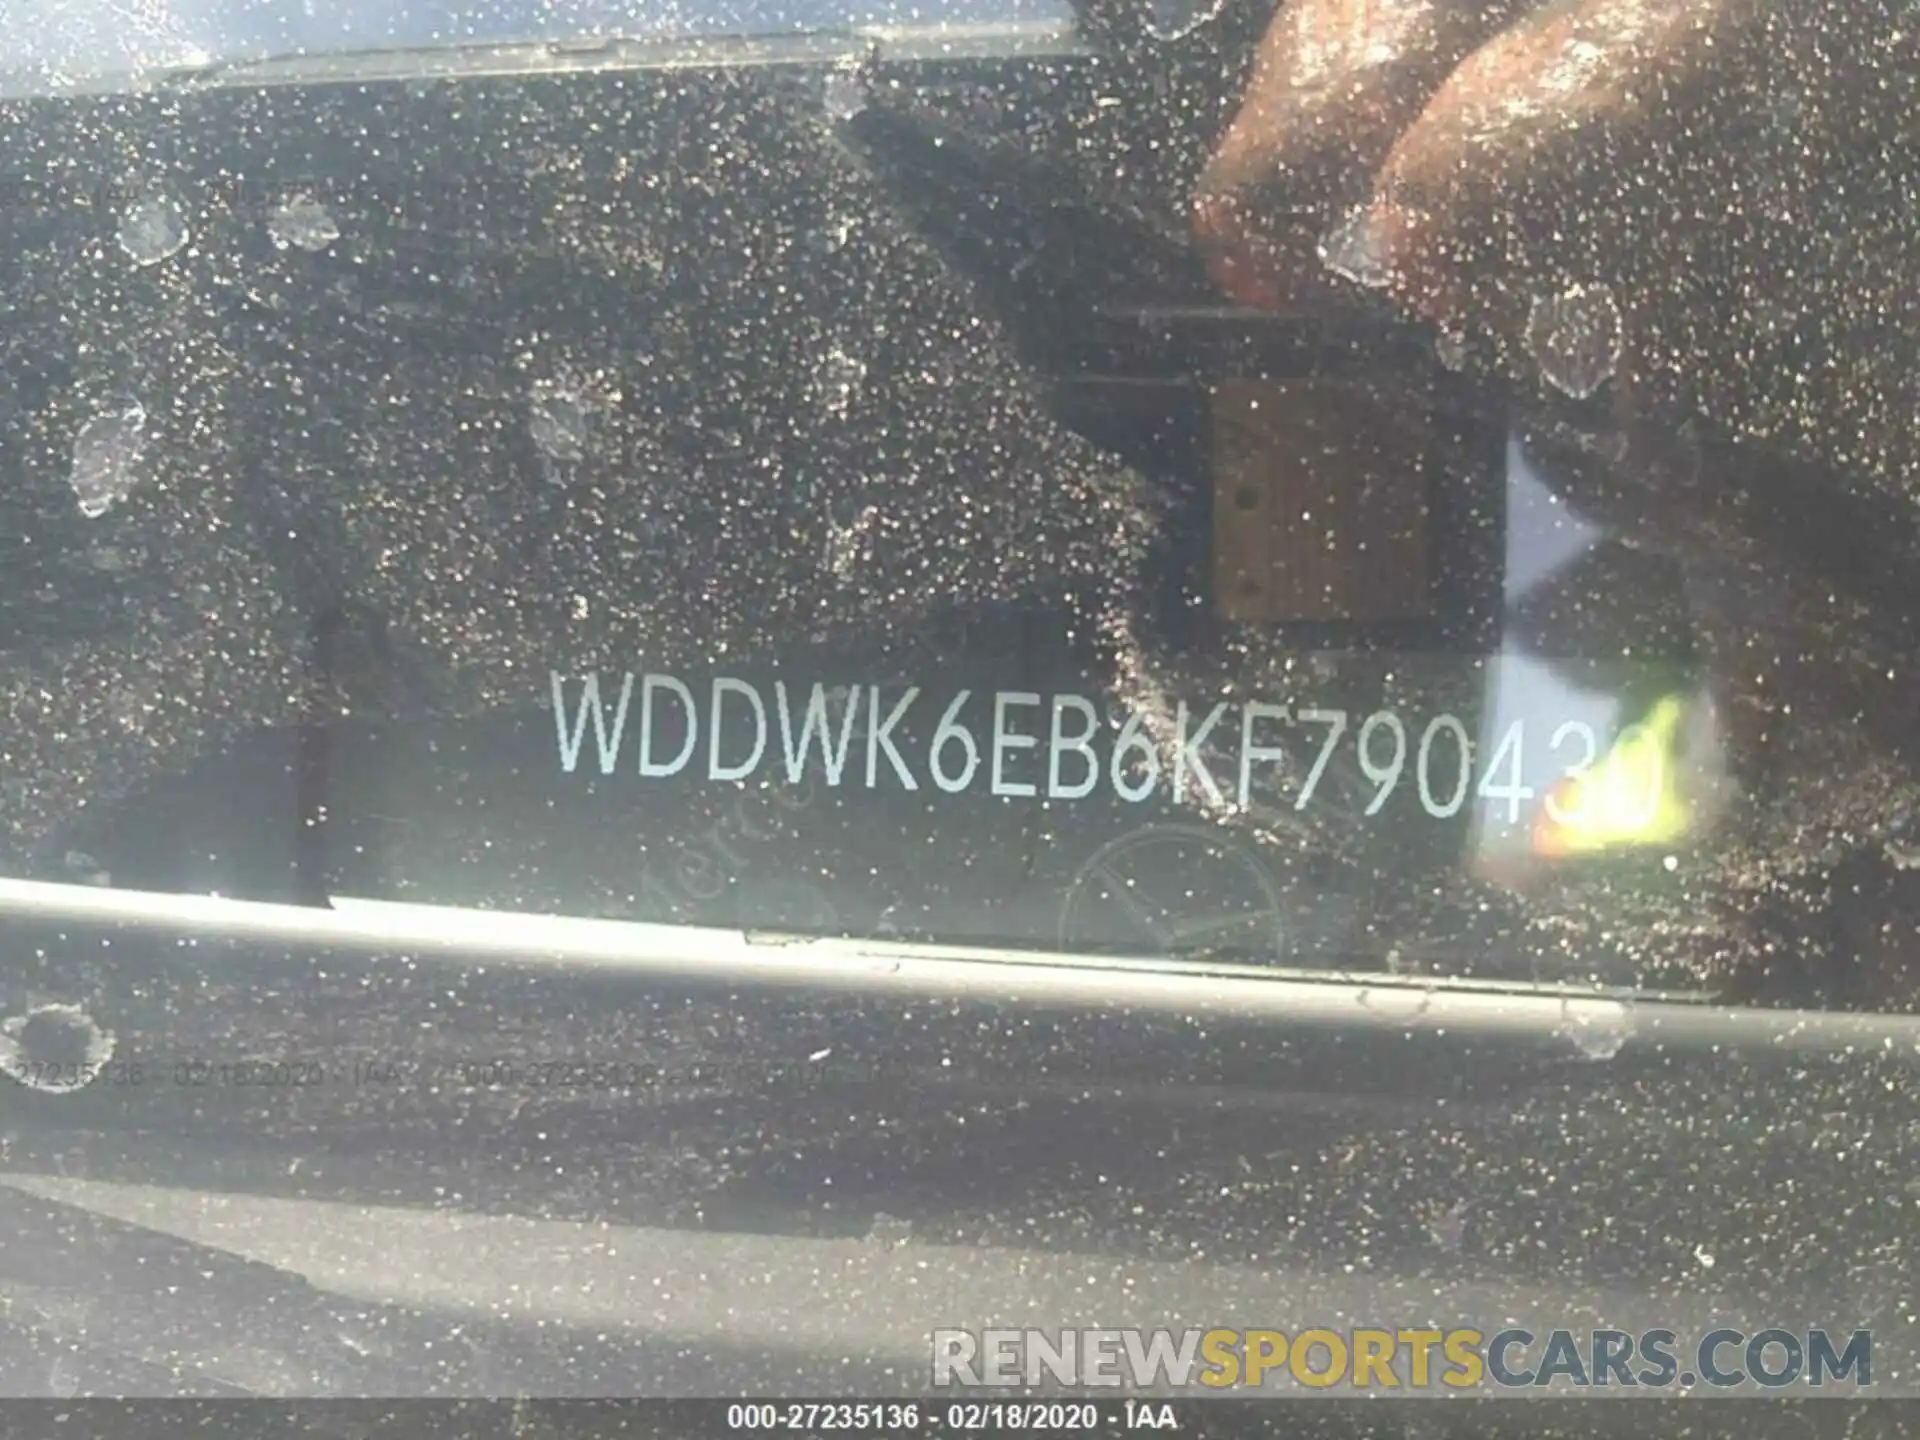 9 Photograph of a damaged car WDDWK6EB6KF790430 MERCEDES-BENZ C 2019